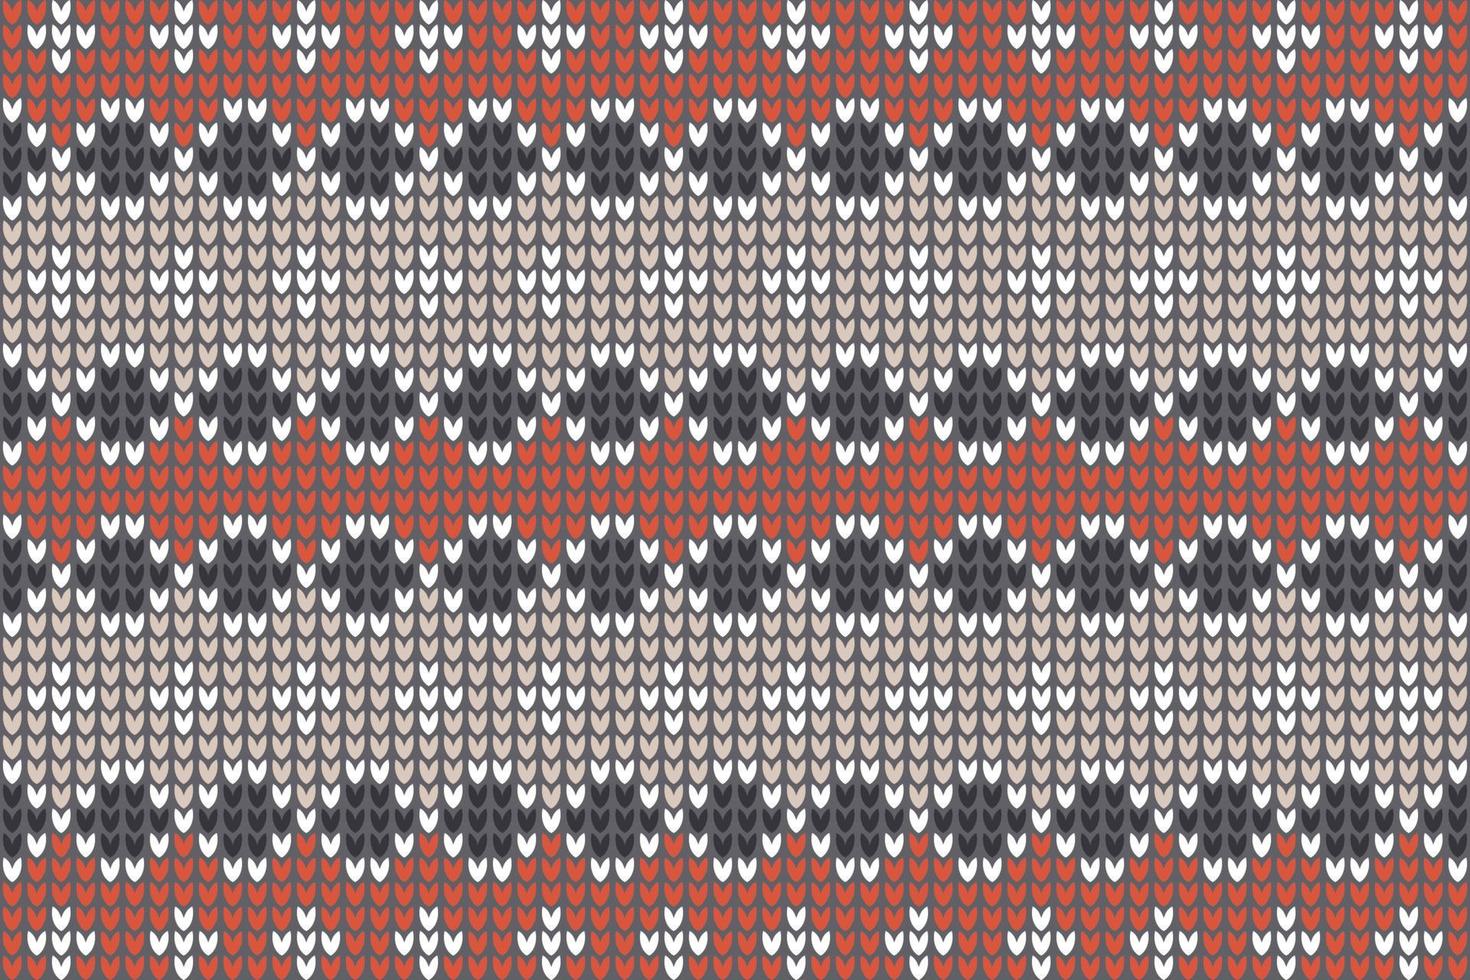 patrón de punto de fondo de patrón de isla justa para textiles de moda, prendas de punto y gráficos. vector